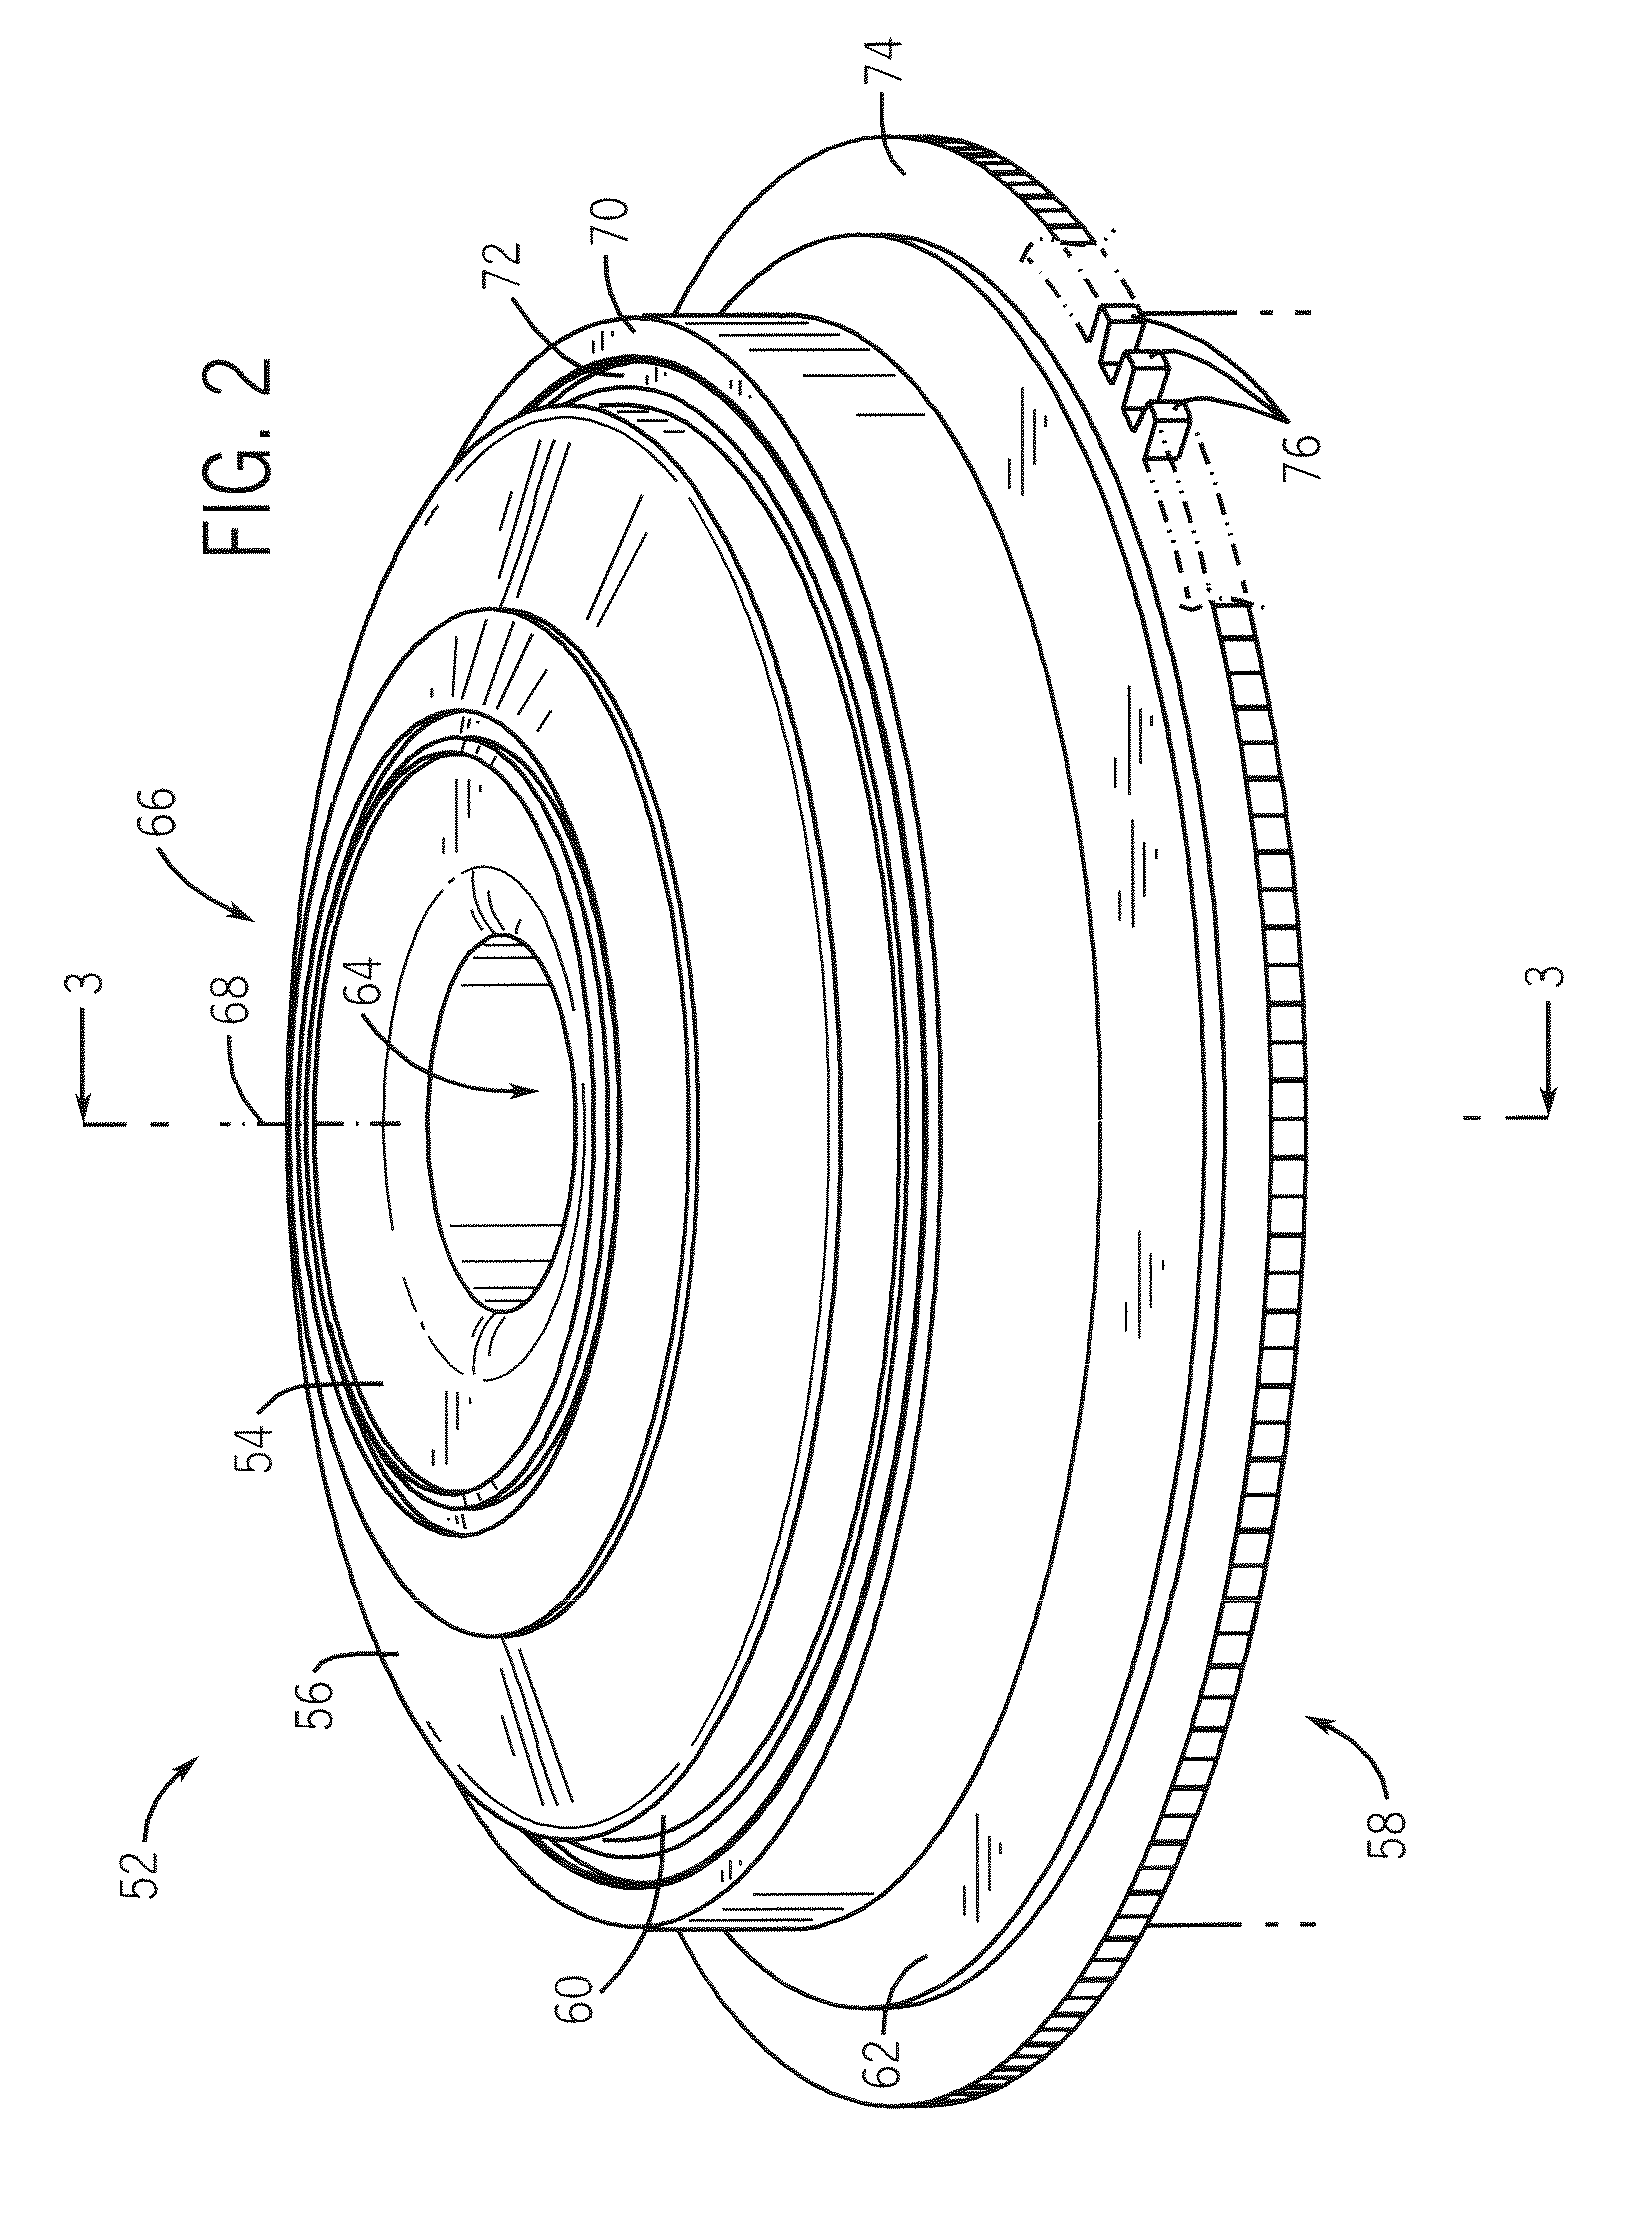 Flywheel with torsional dampening ring